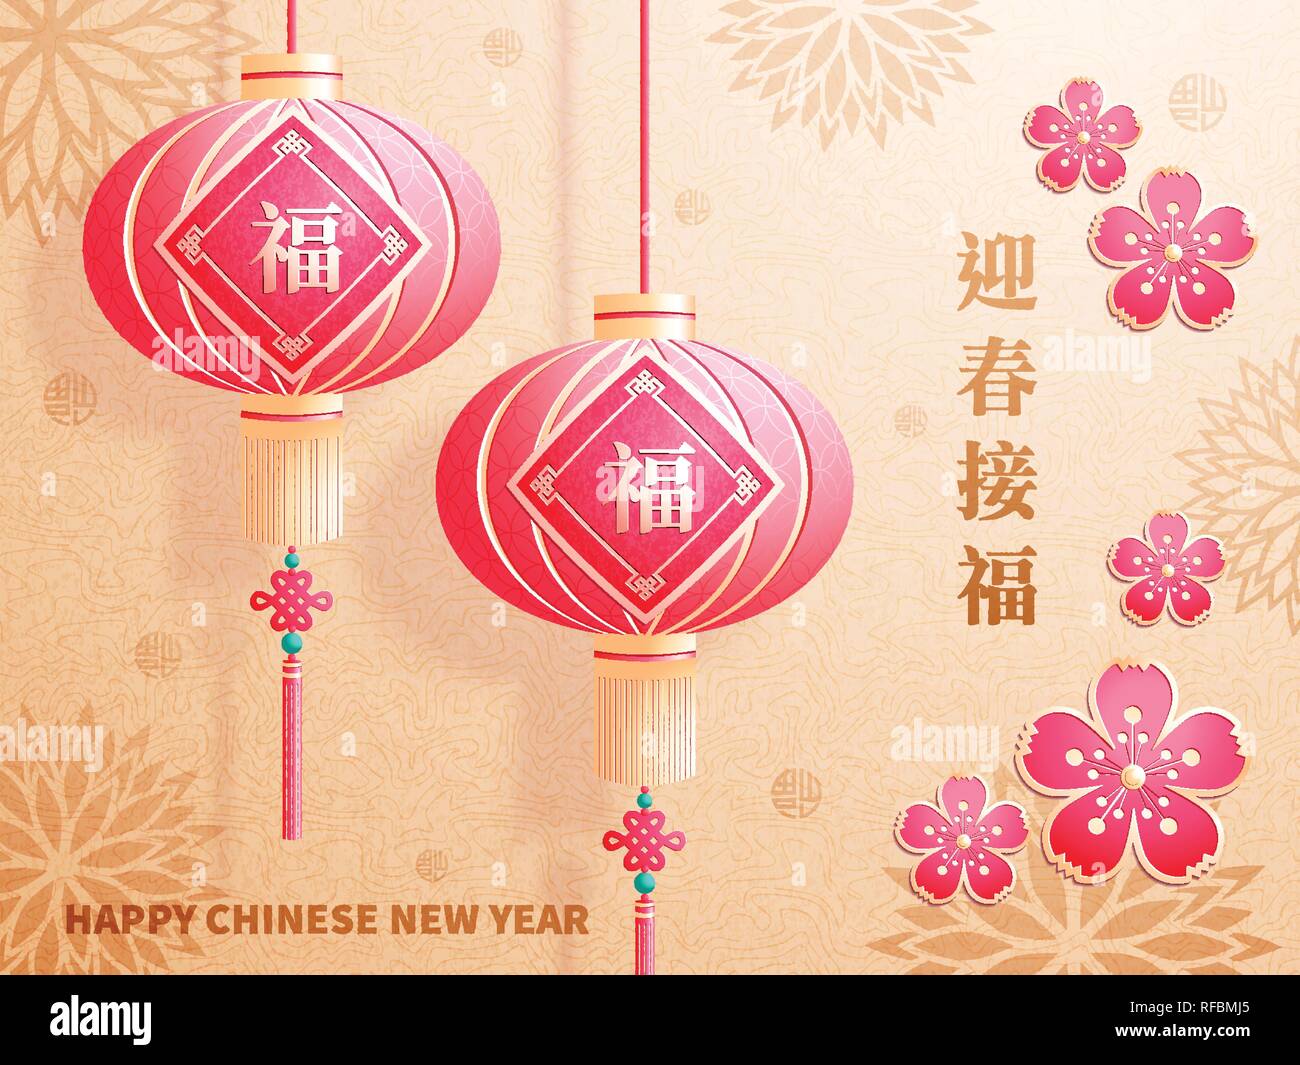 Le Nouvel An chinois, l'année du cochon. Traduction : que la nouvelle année vous apporte la bonne fortune Illustration de Vecteur